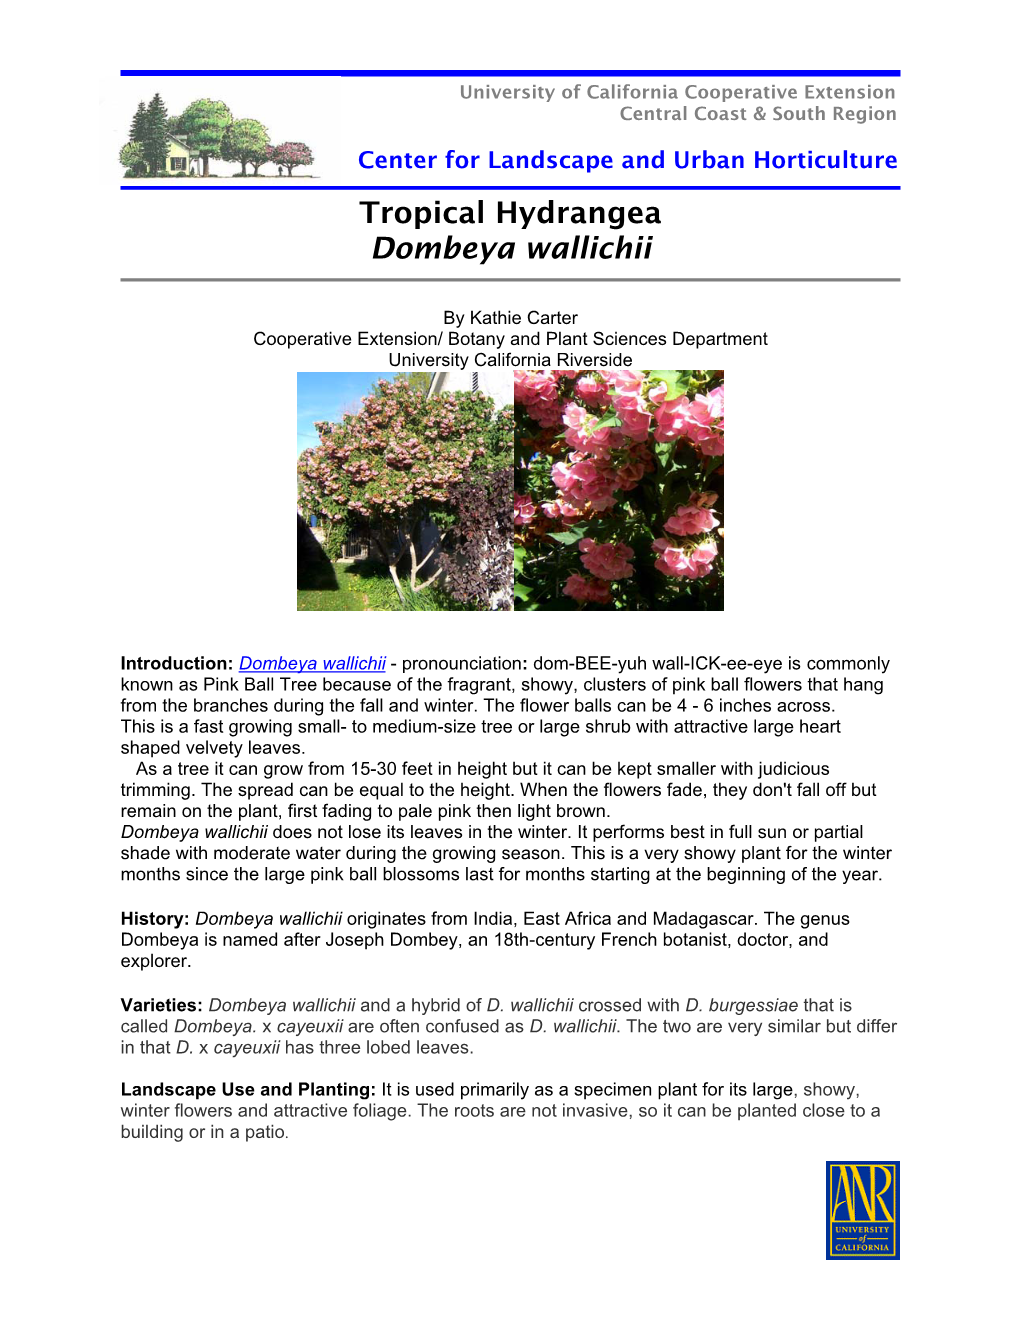 Tropical Hydrangea Dombeya Wallichii